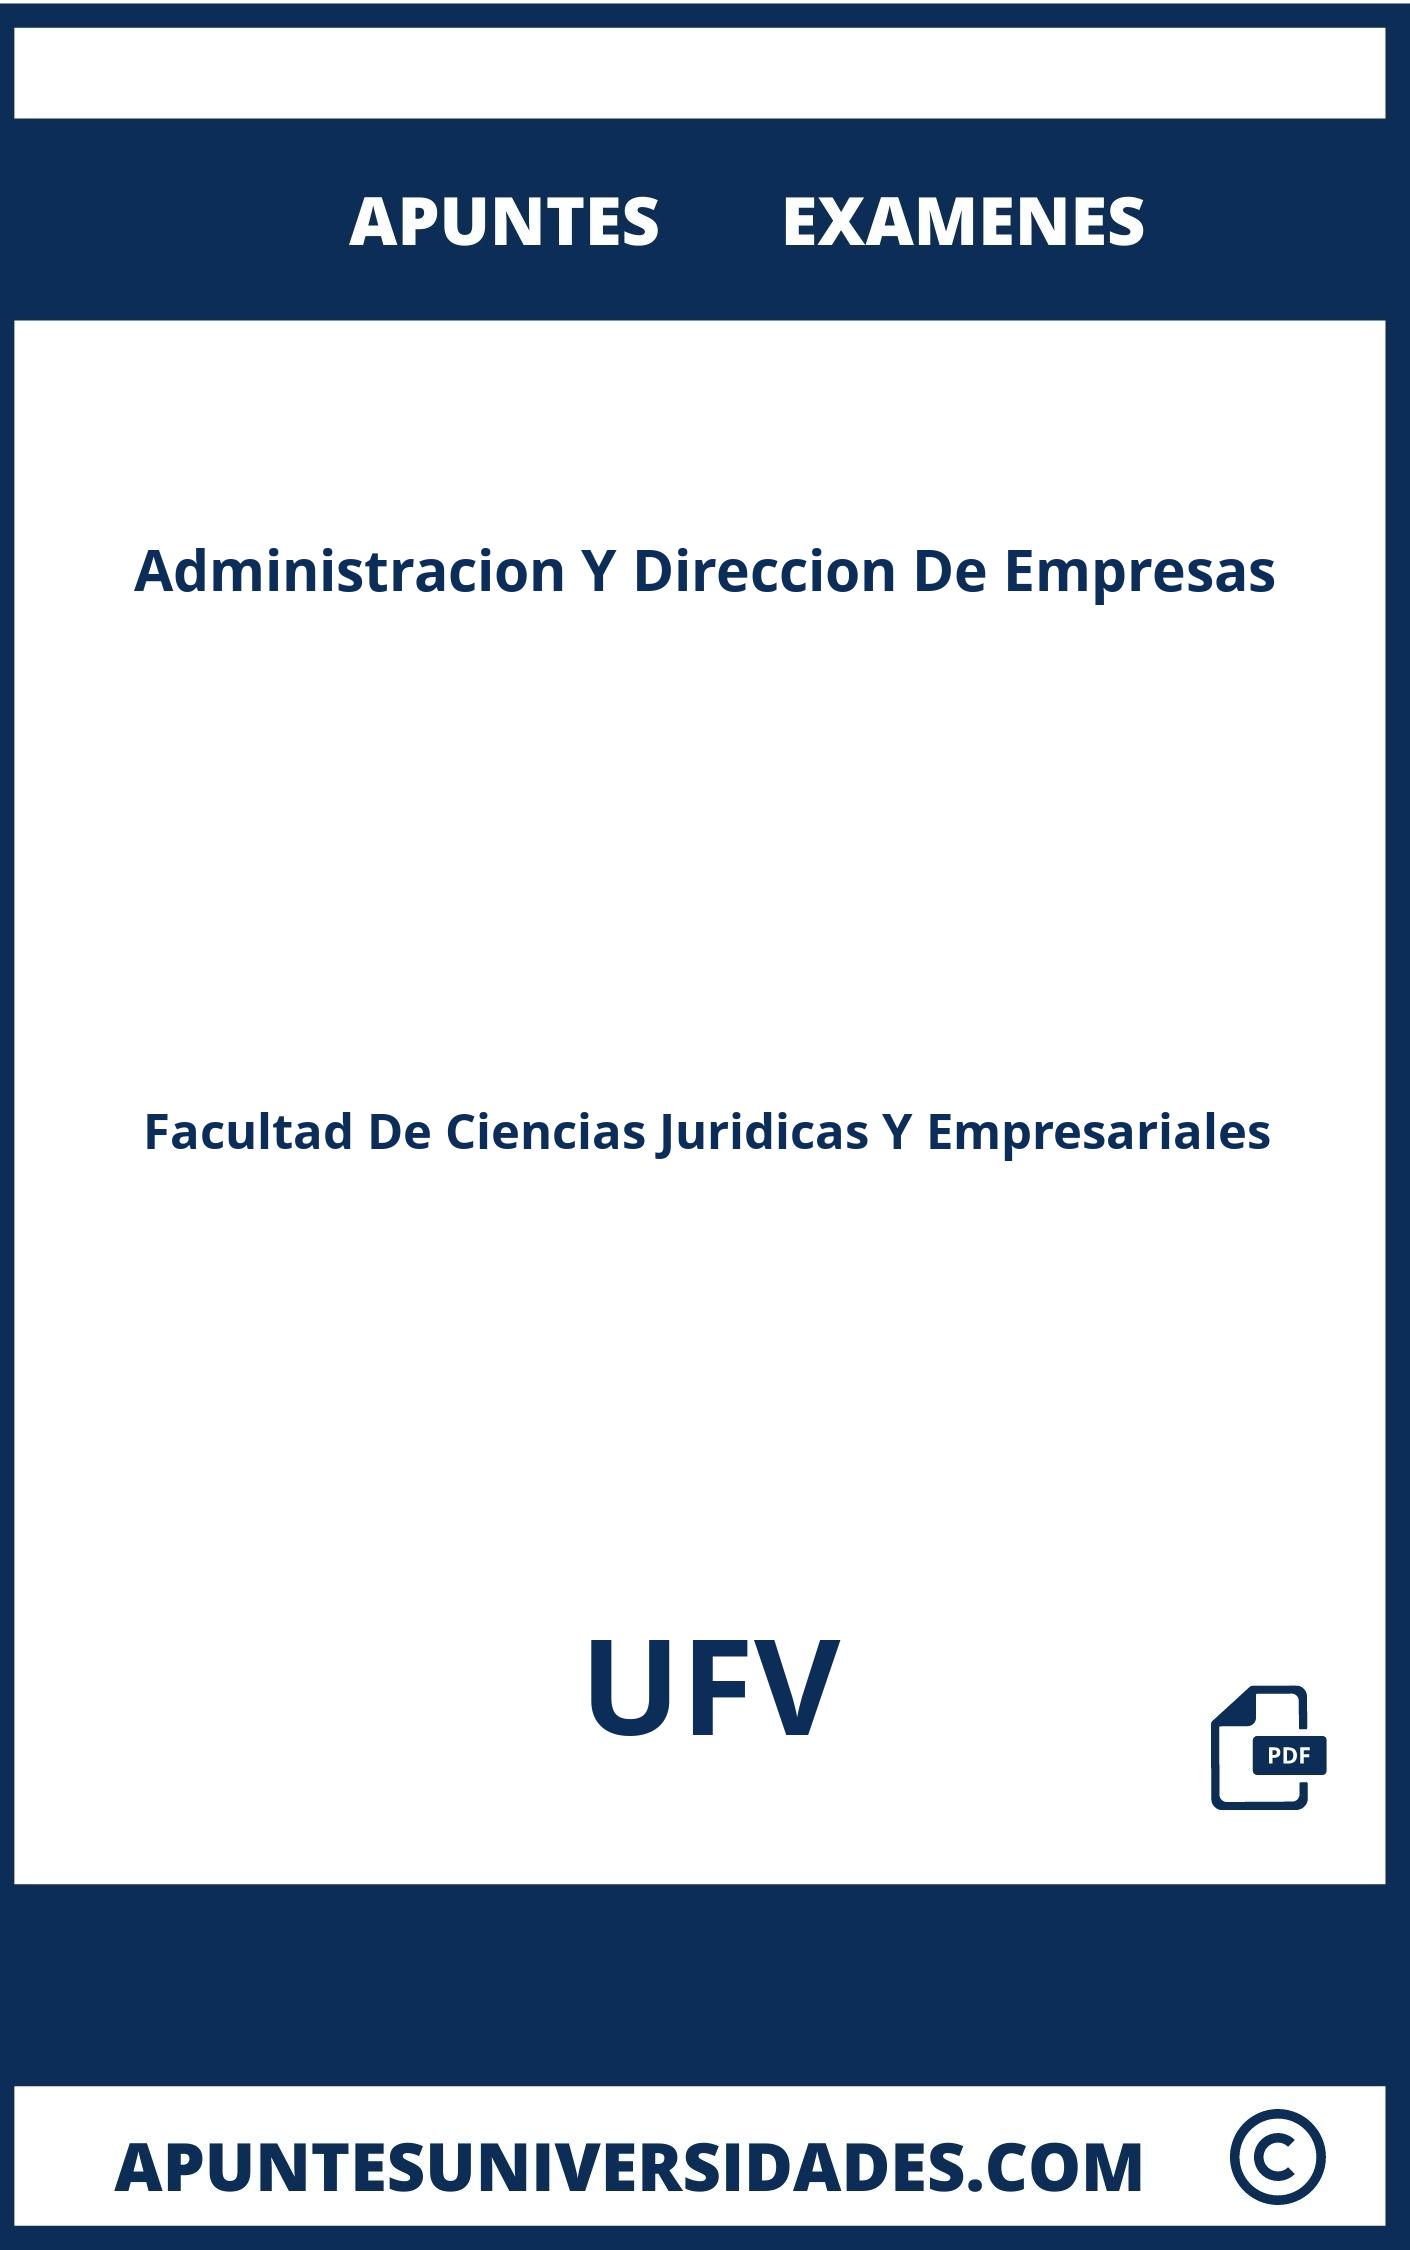 Examenes y Apuntes de Administracion Y Direccion De Empresas UFV